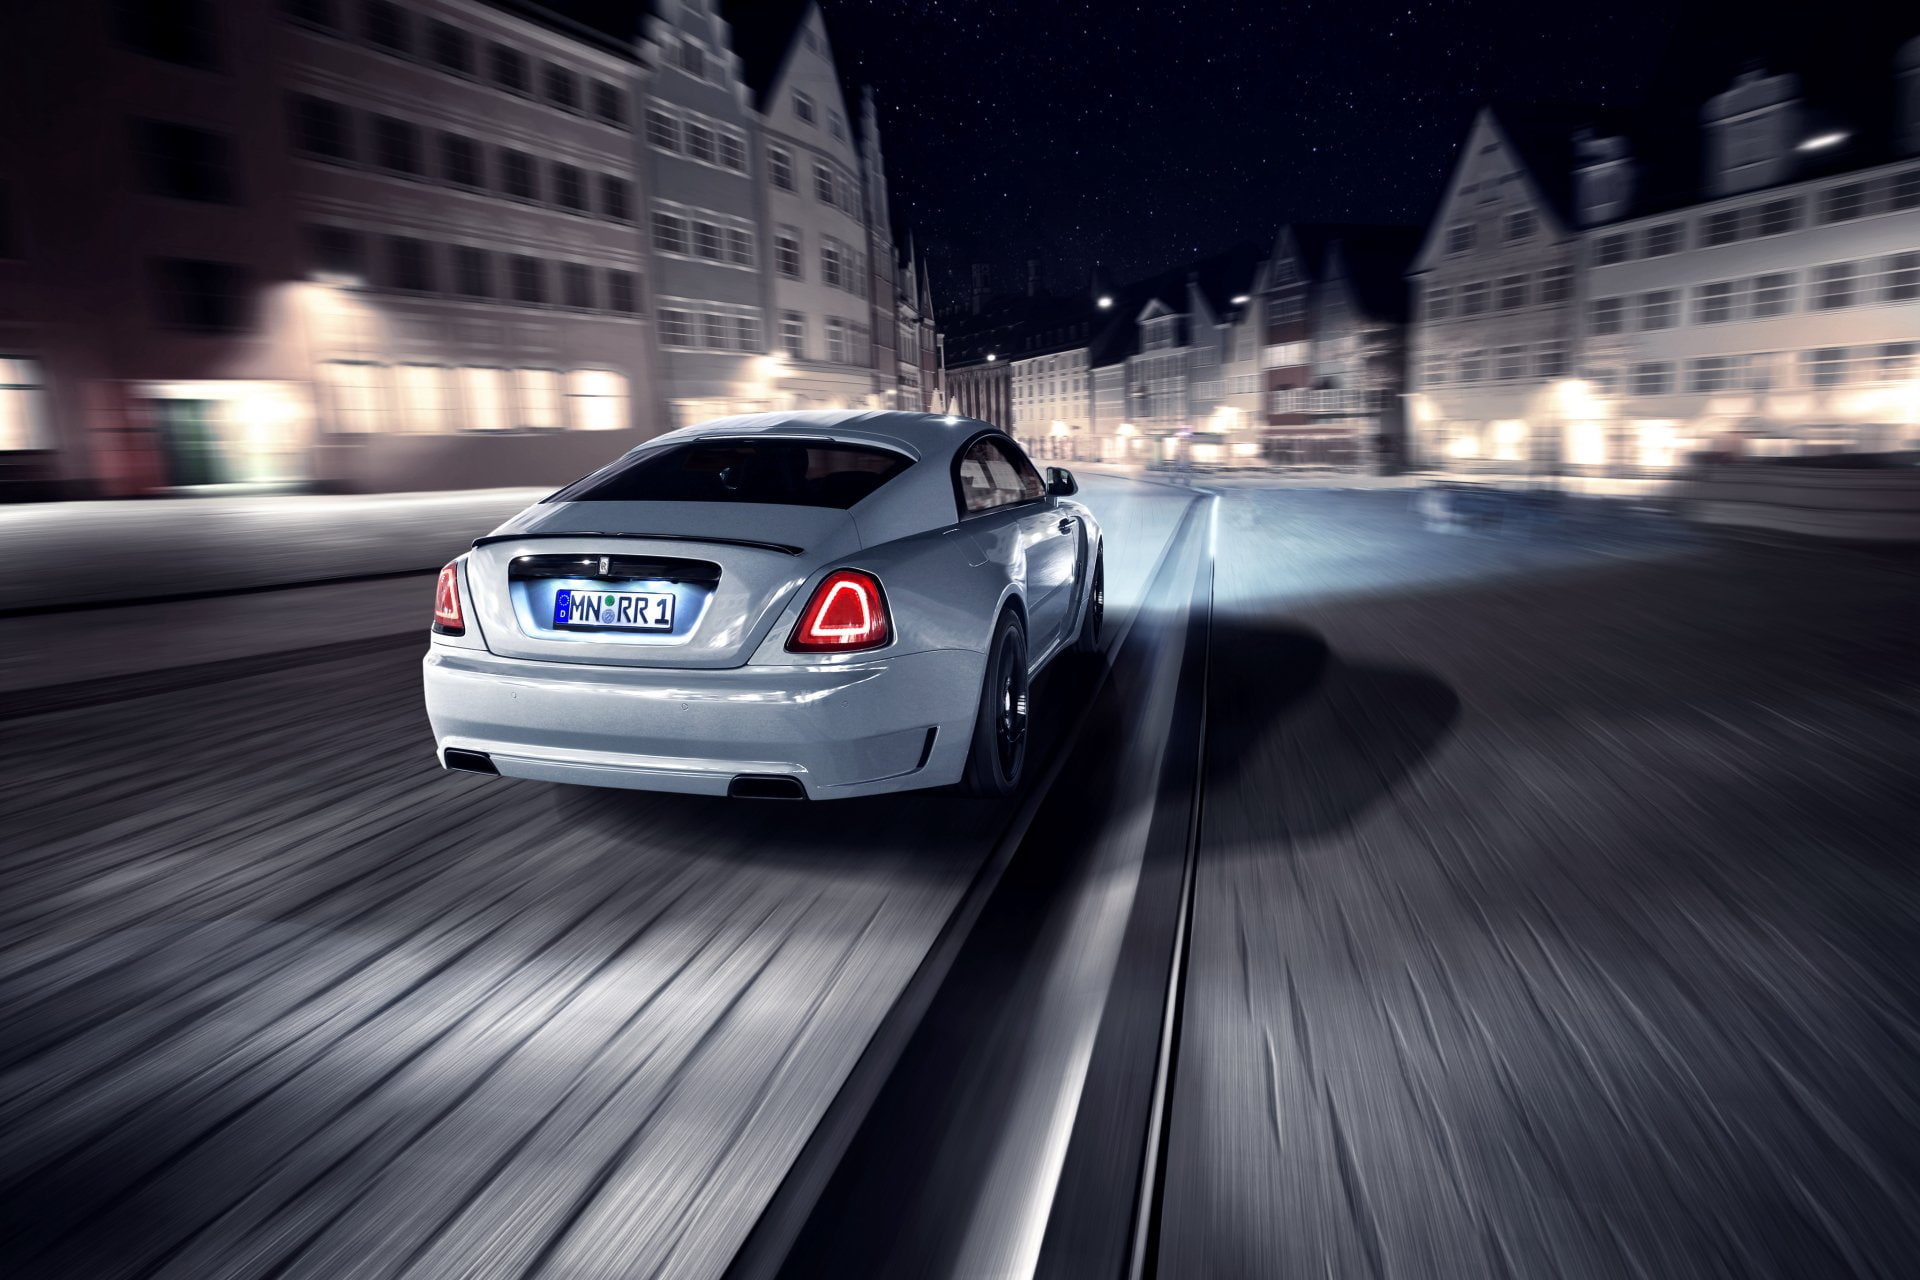 Rolls Royce, Rolls-Royce Wraith, Car, Luxury Car, Motion Blur